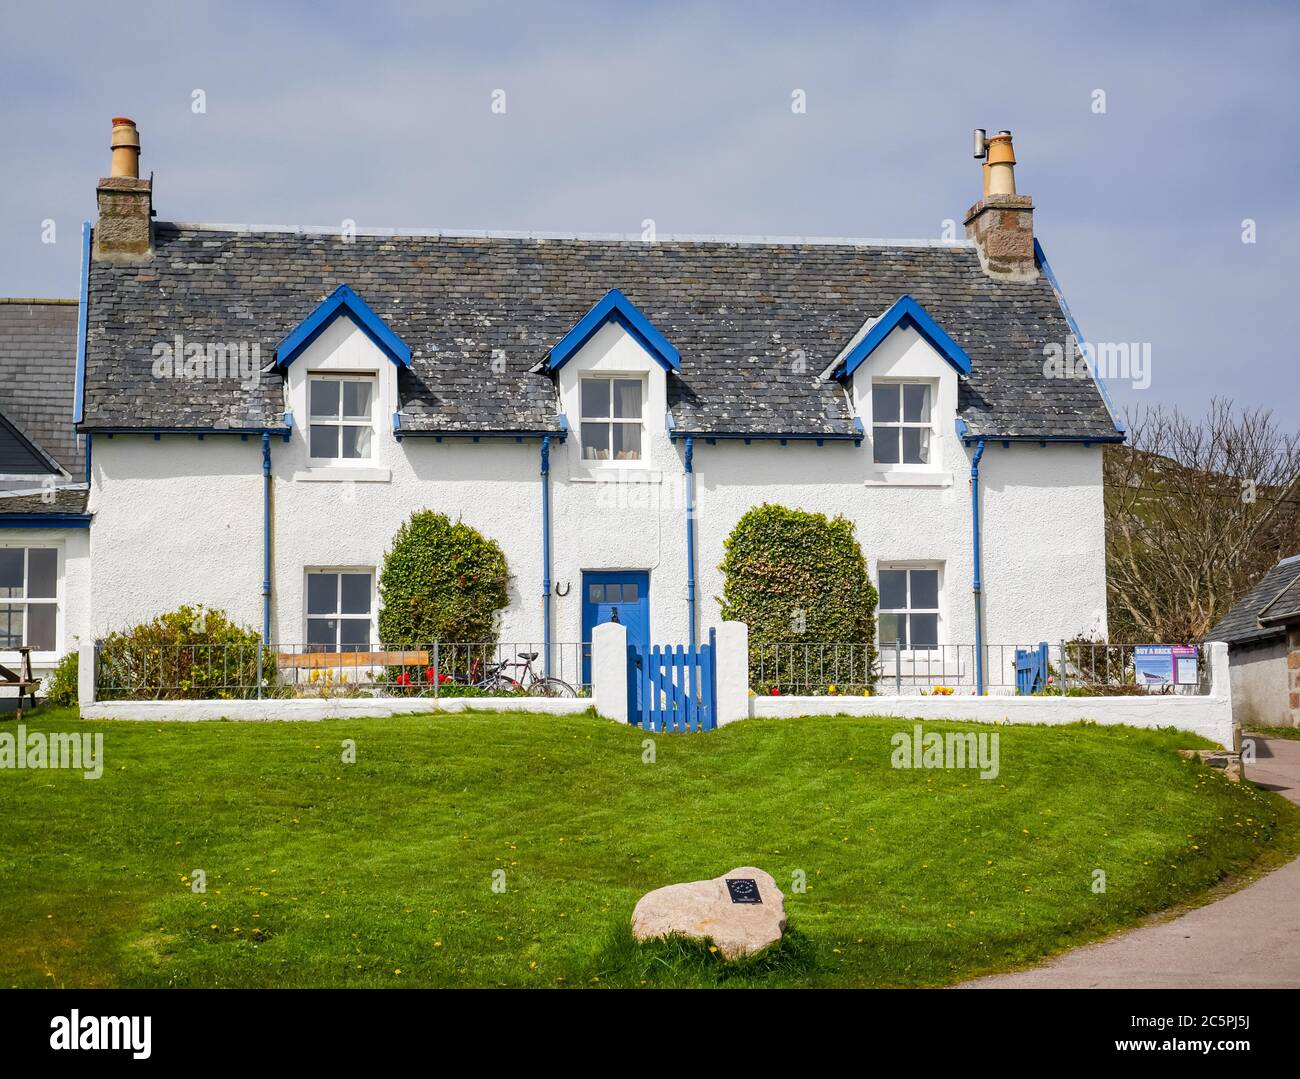 Maison traditionnelle avec dortoirs sur l'île d'Iona, Mull, Hebrides intérieures, Écosse, Royaume-Uni Banque D'Images